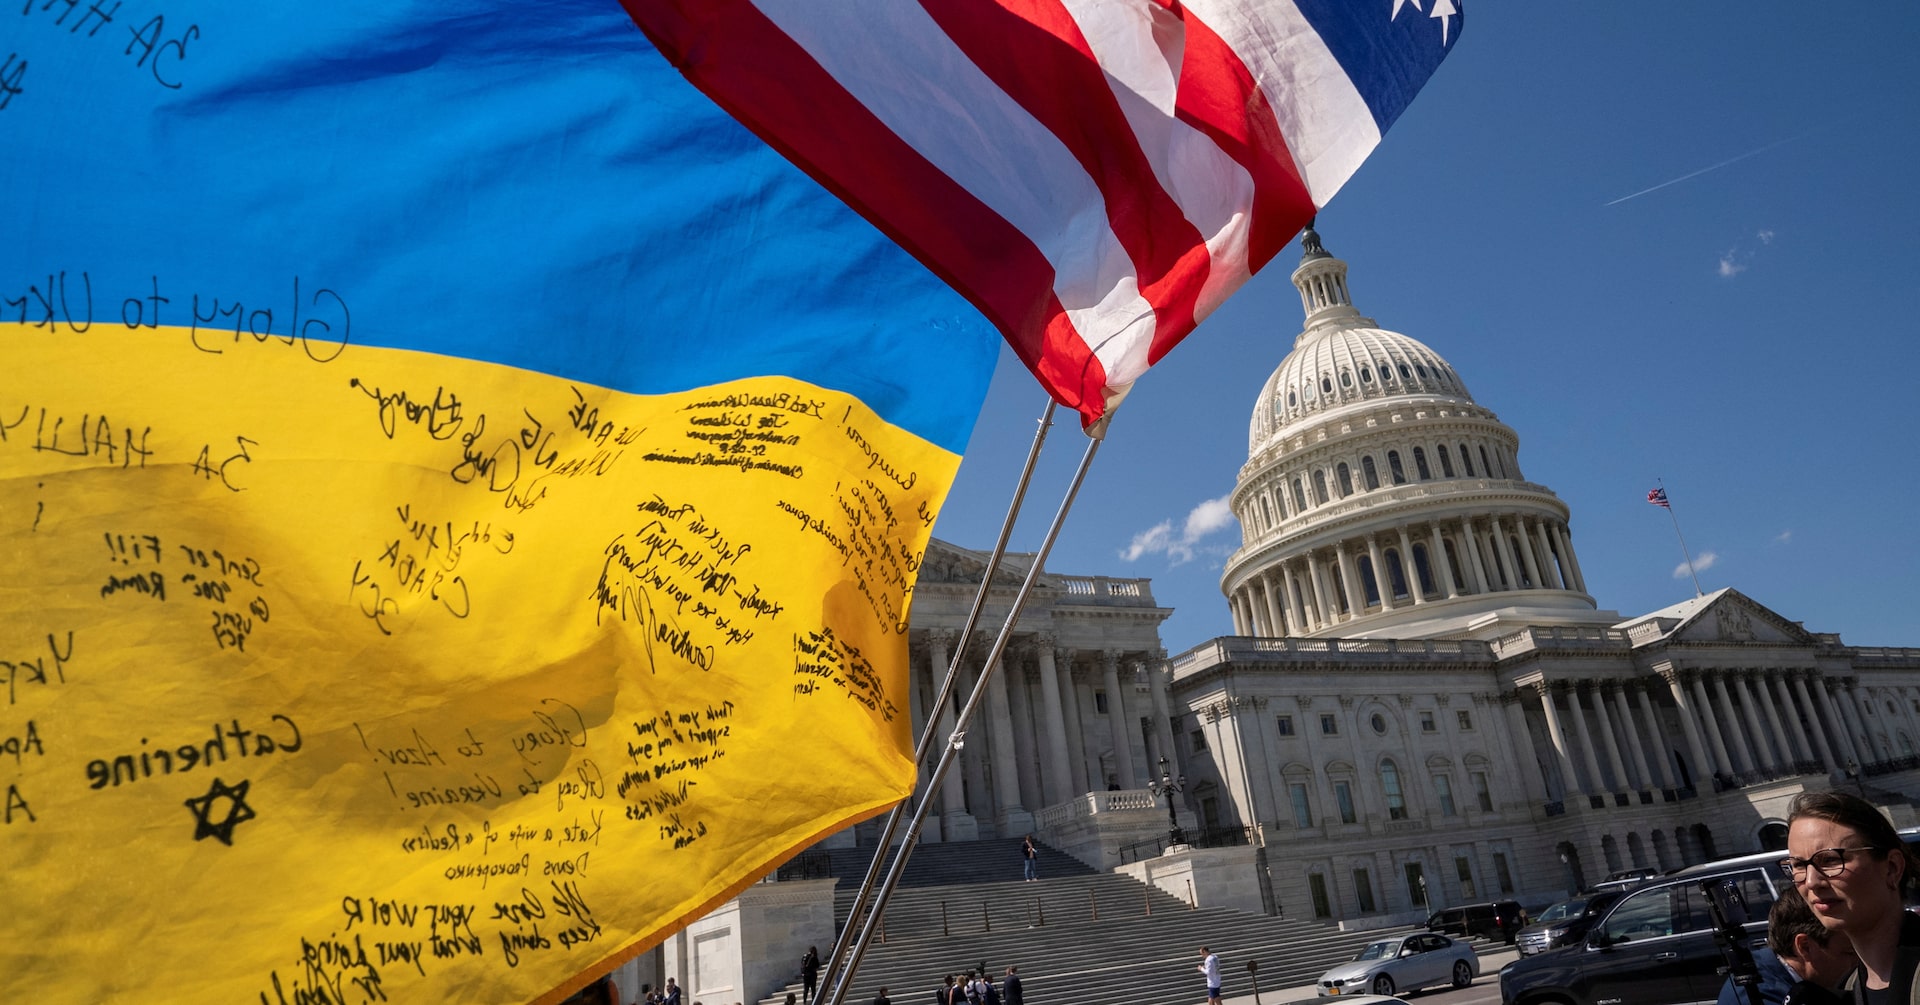 米下院、950億ドルのウクライナ・イスラエル支援法案可決 上院へ